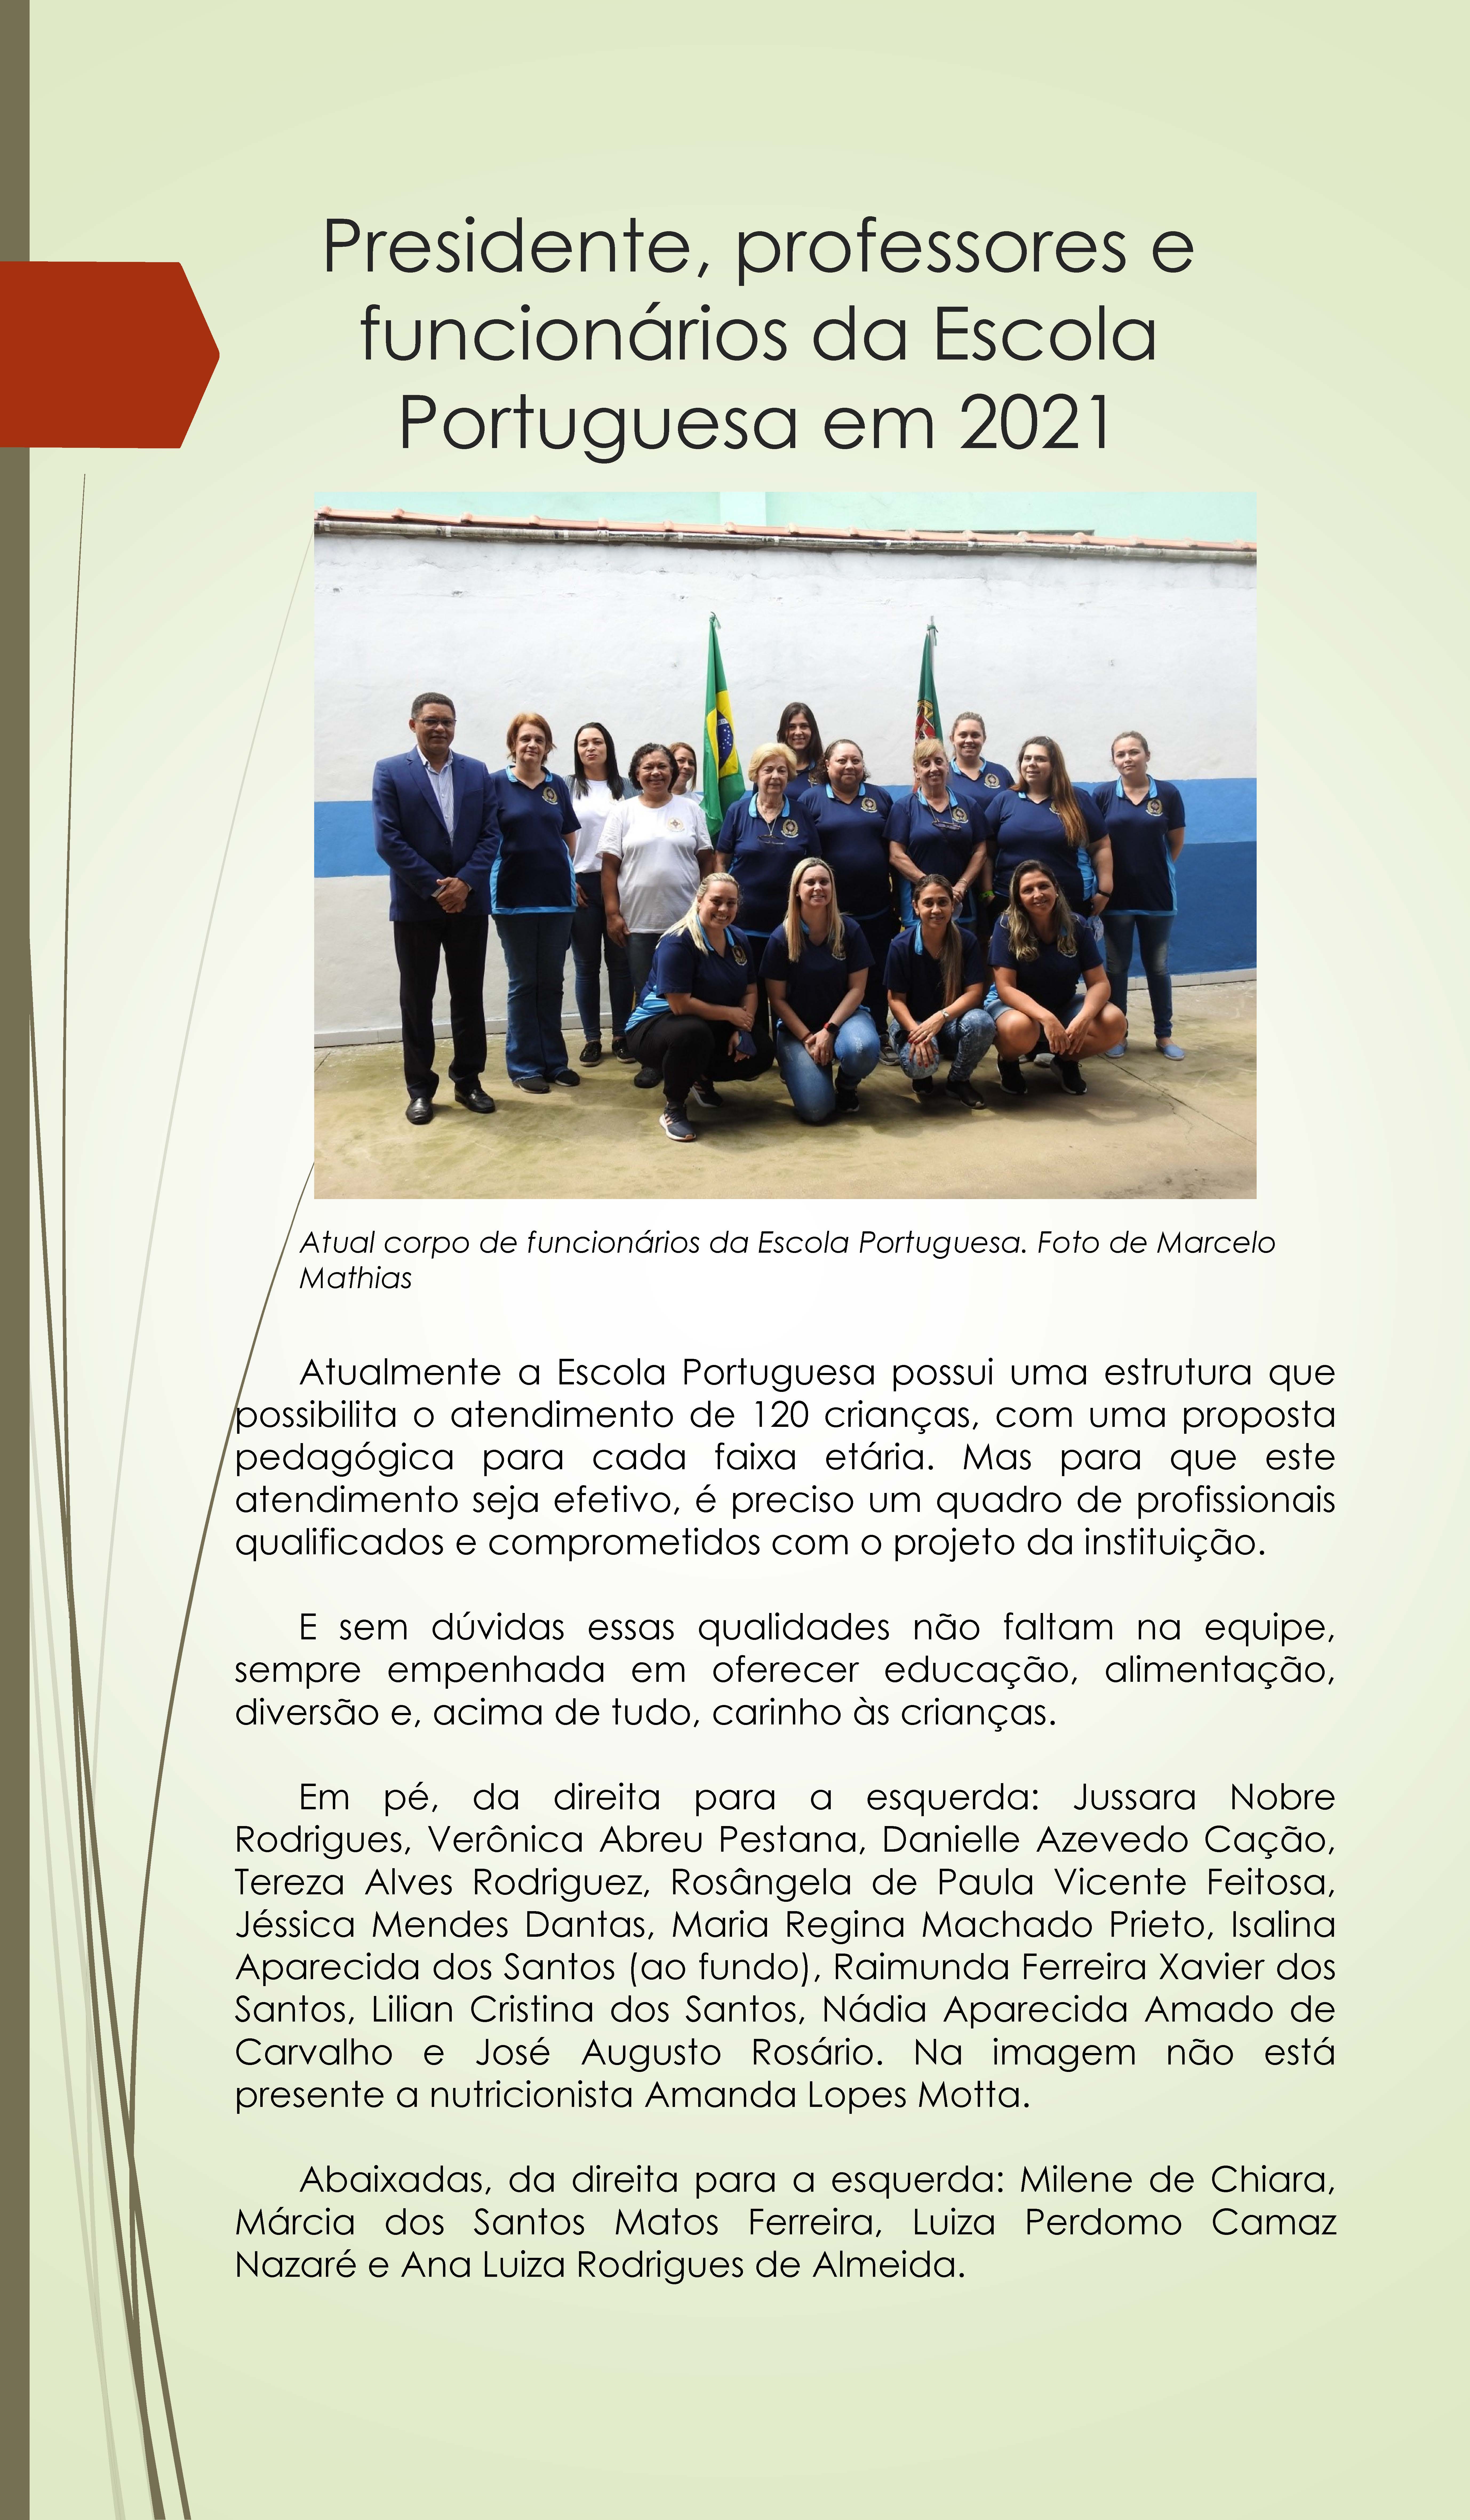 expo_escola_portugesa_100_anos_pdf_pgina_12.jpg